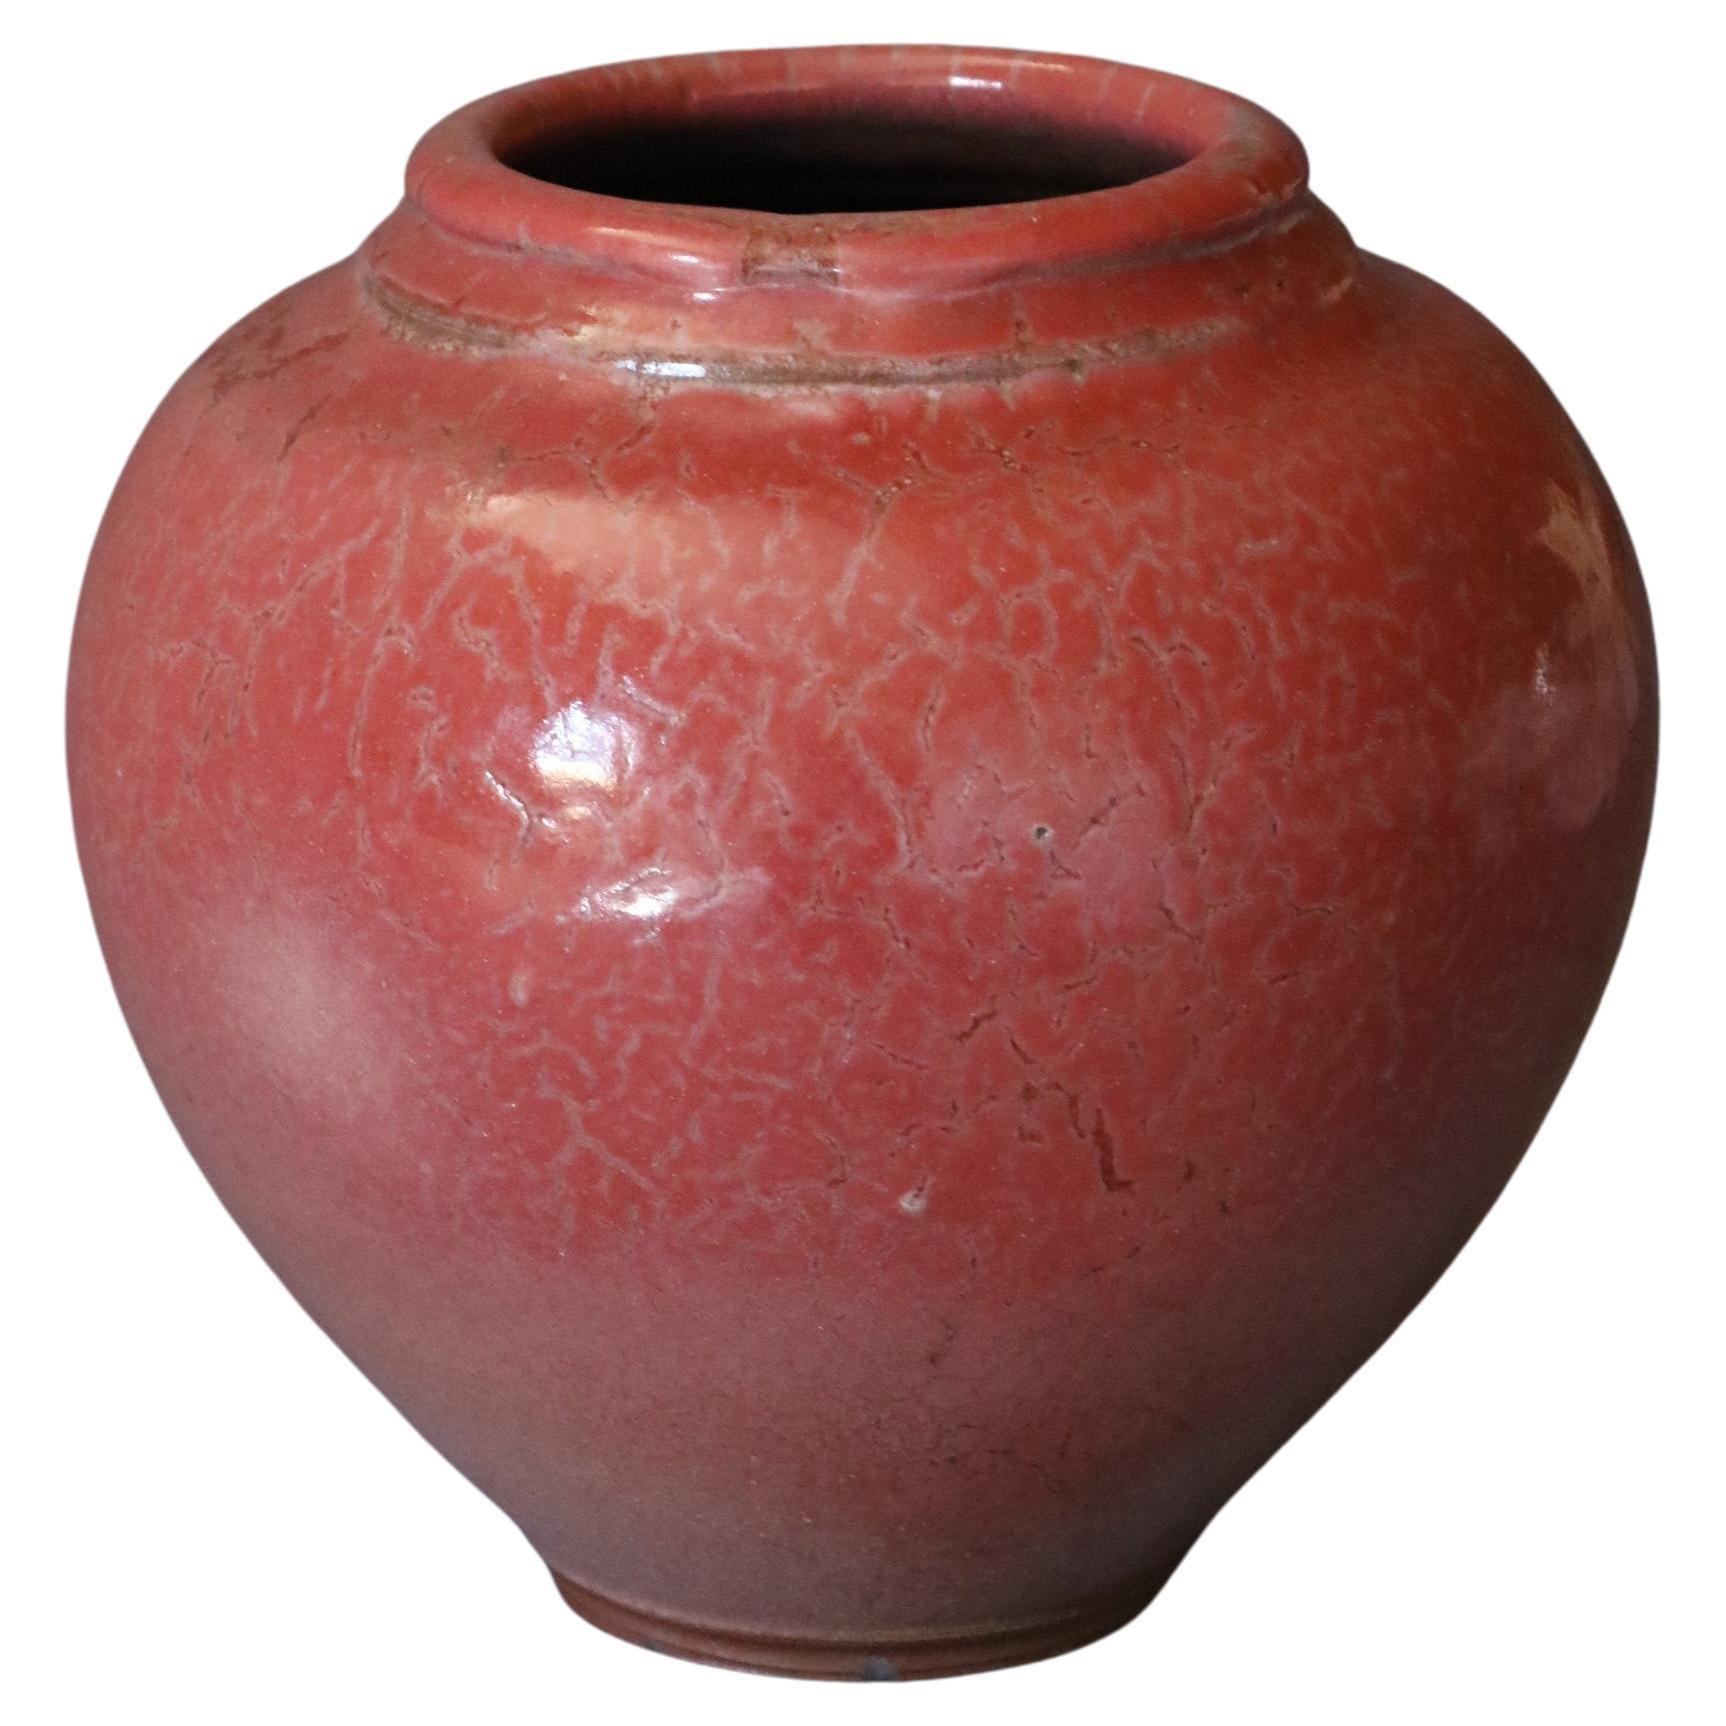 Gran jarrón rojo de cerámica francesa de Marc Uzan, hacia 2000